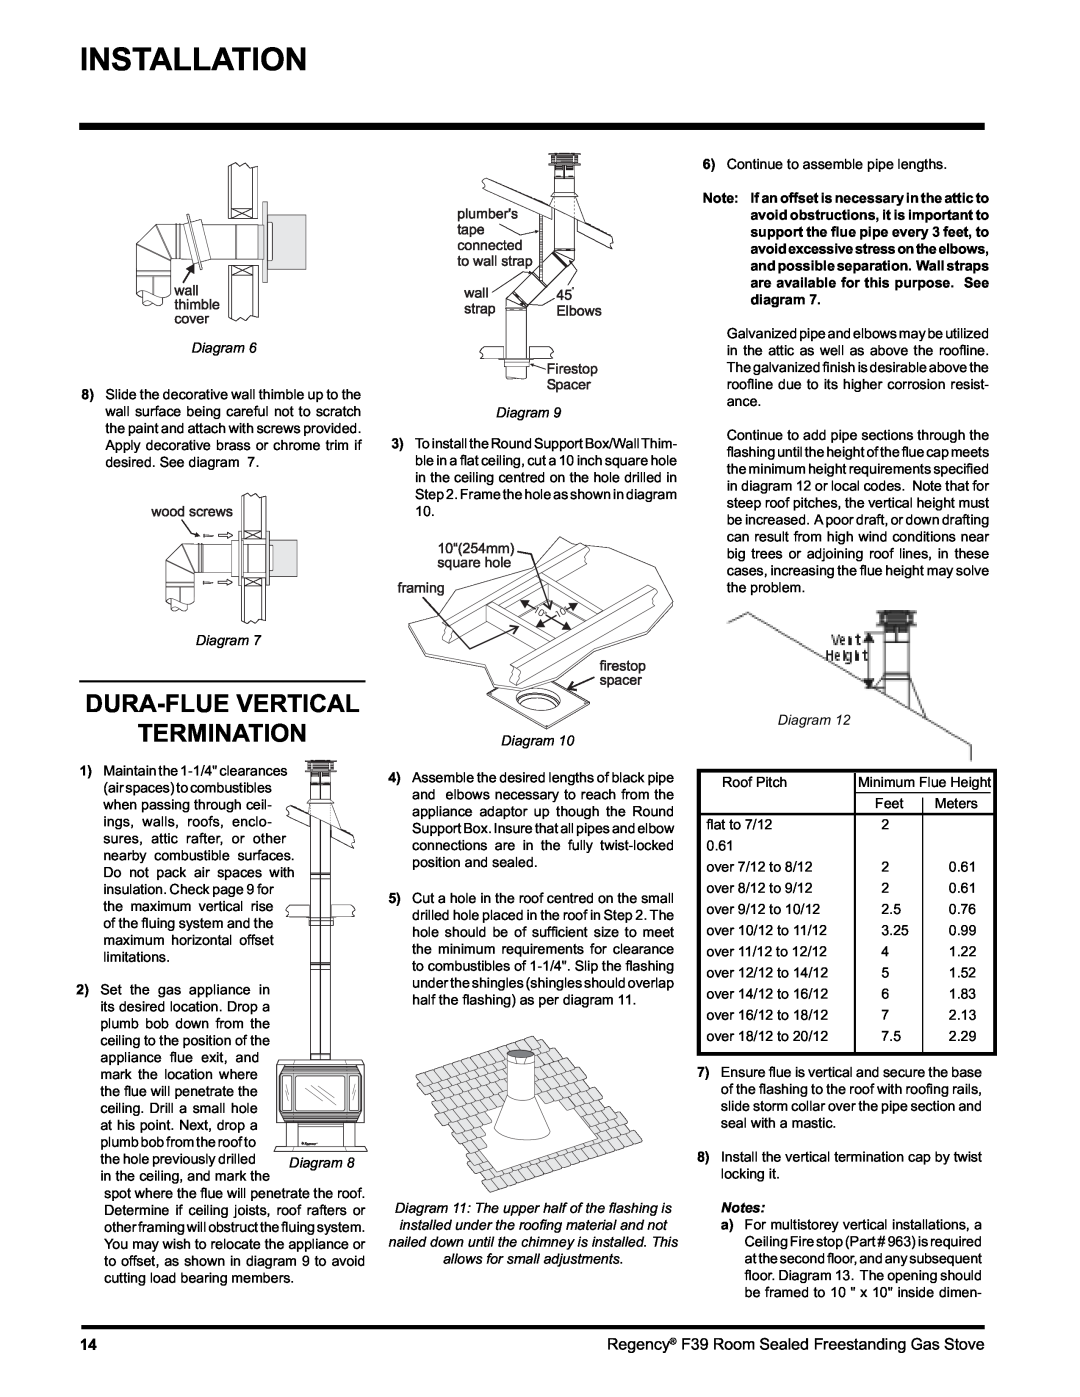 Regency F39-NG, F39-LPG installation manual Dura-Fluevertical Termination, Installation, Diagram 